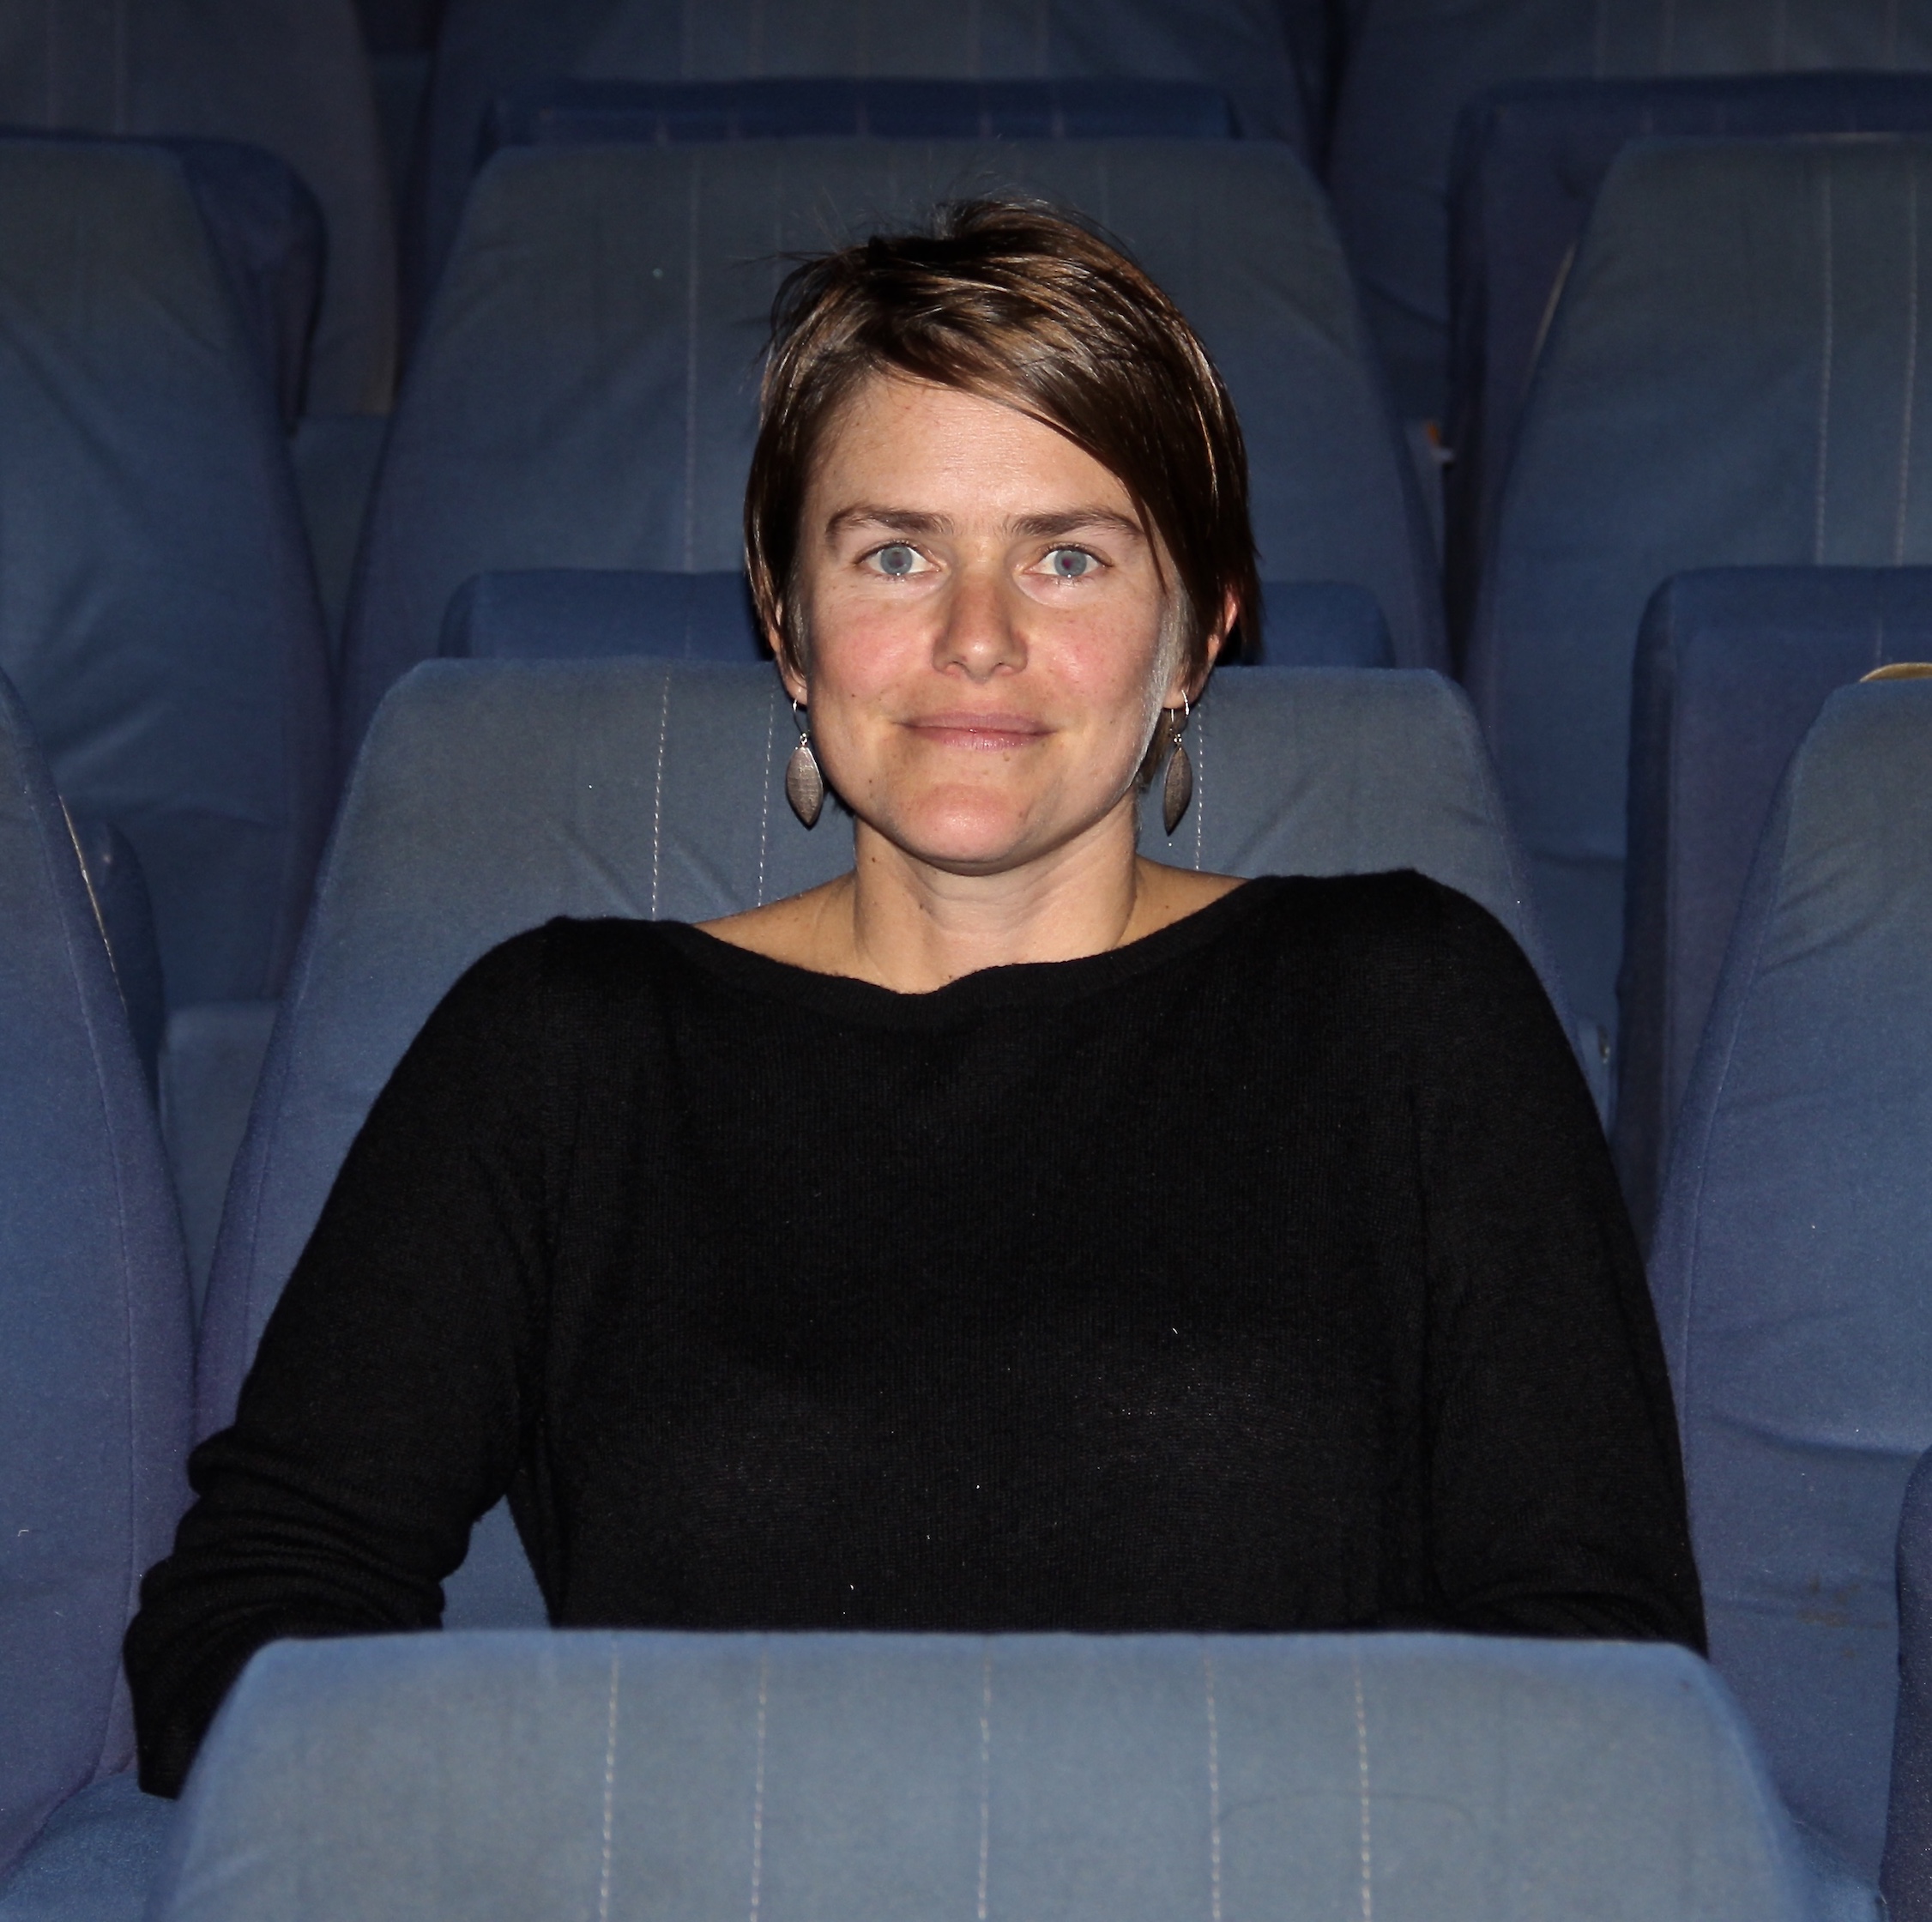 Director Juliana Fanjul